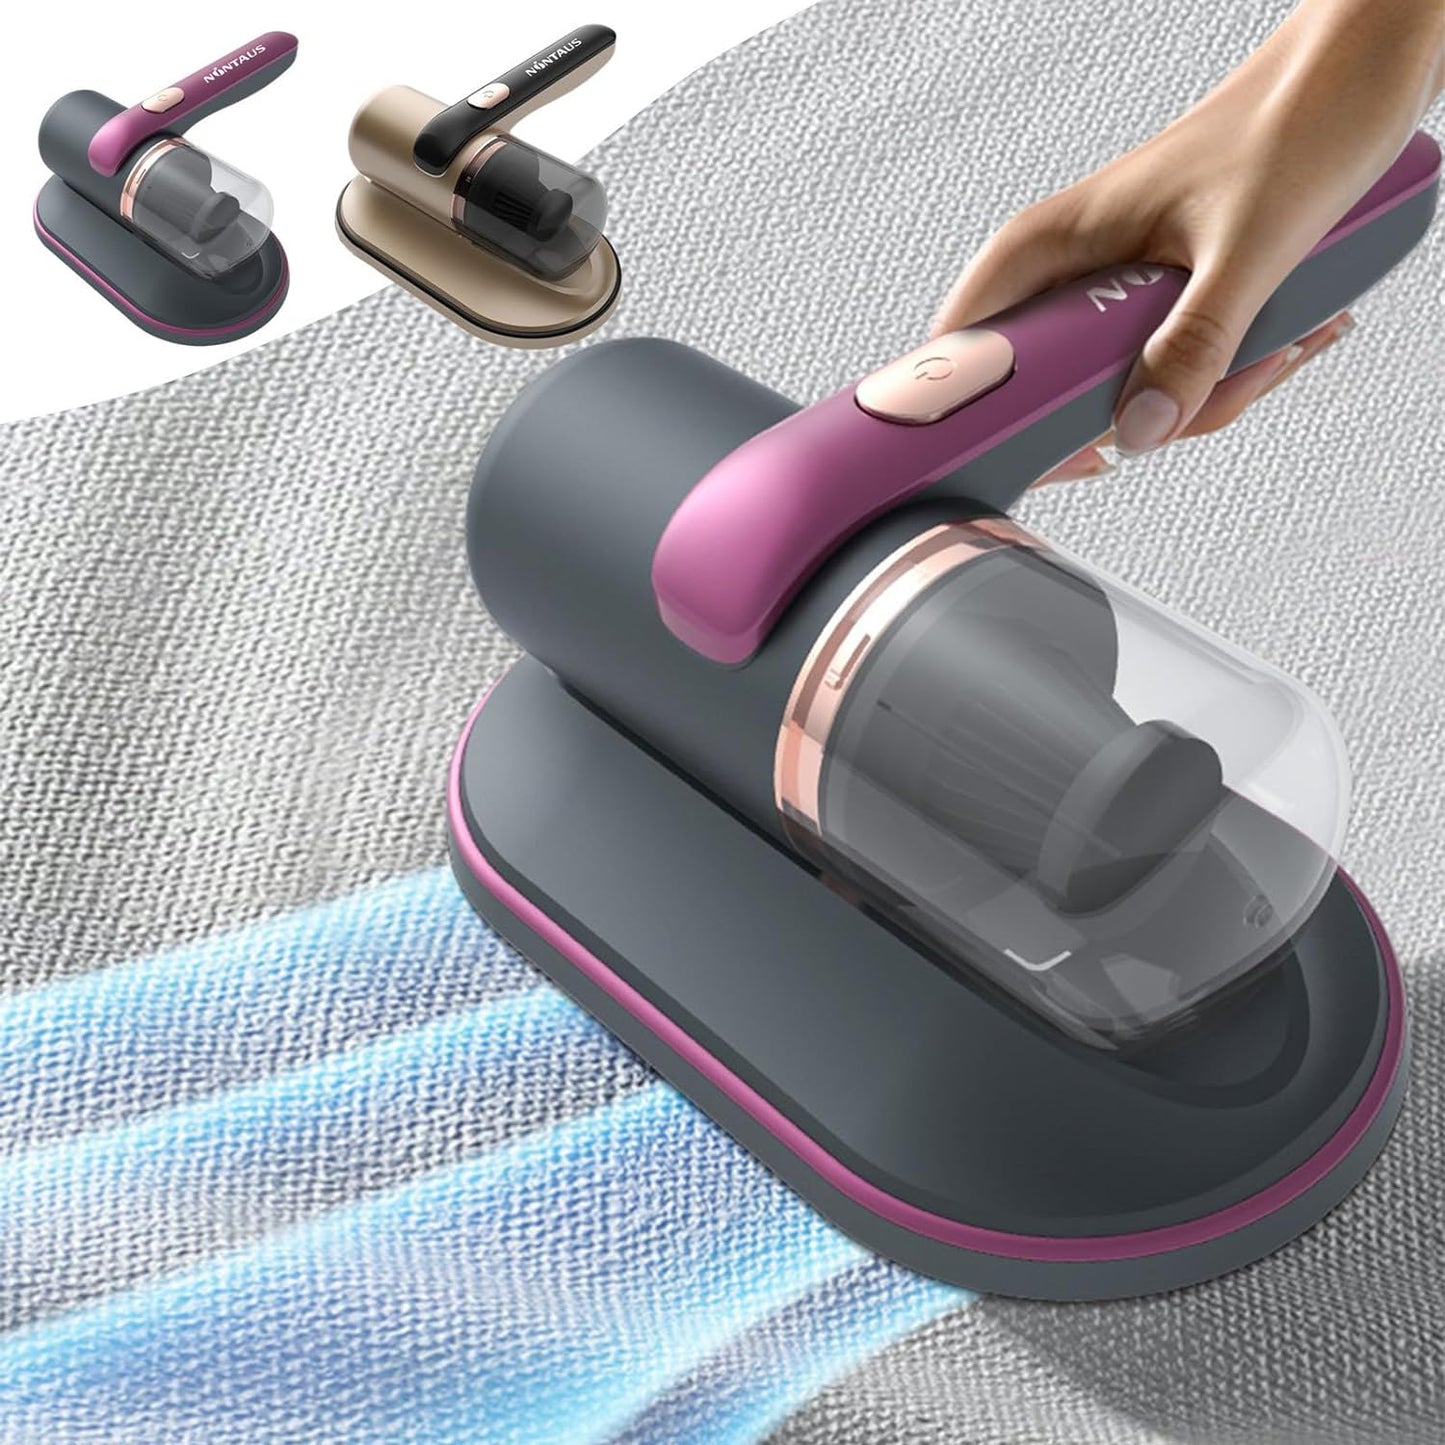 PureVac™ | Anti-Mite Bed Vacuum Cleaner